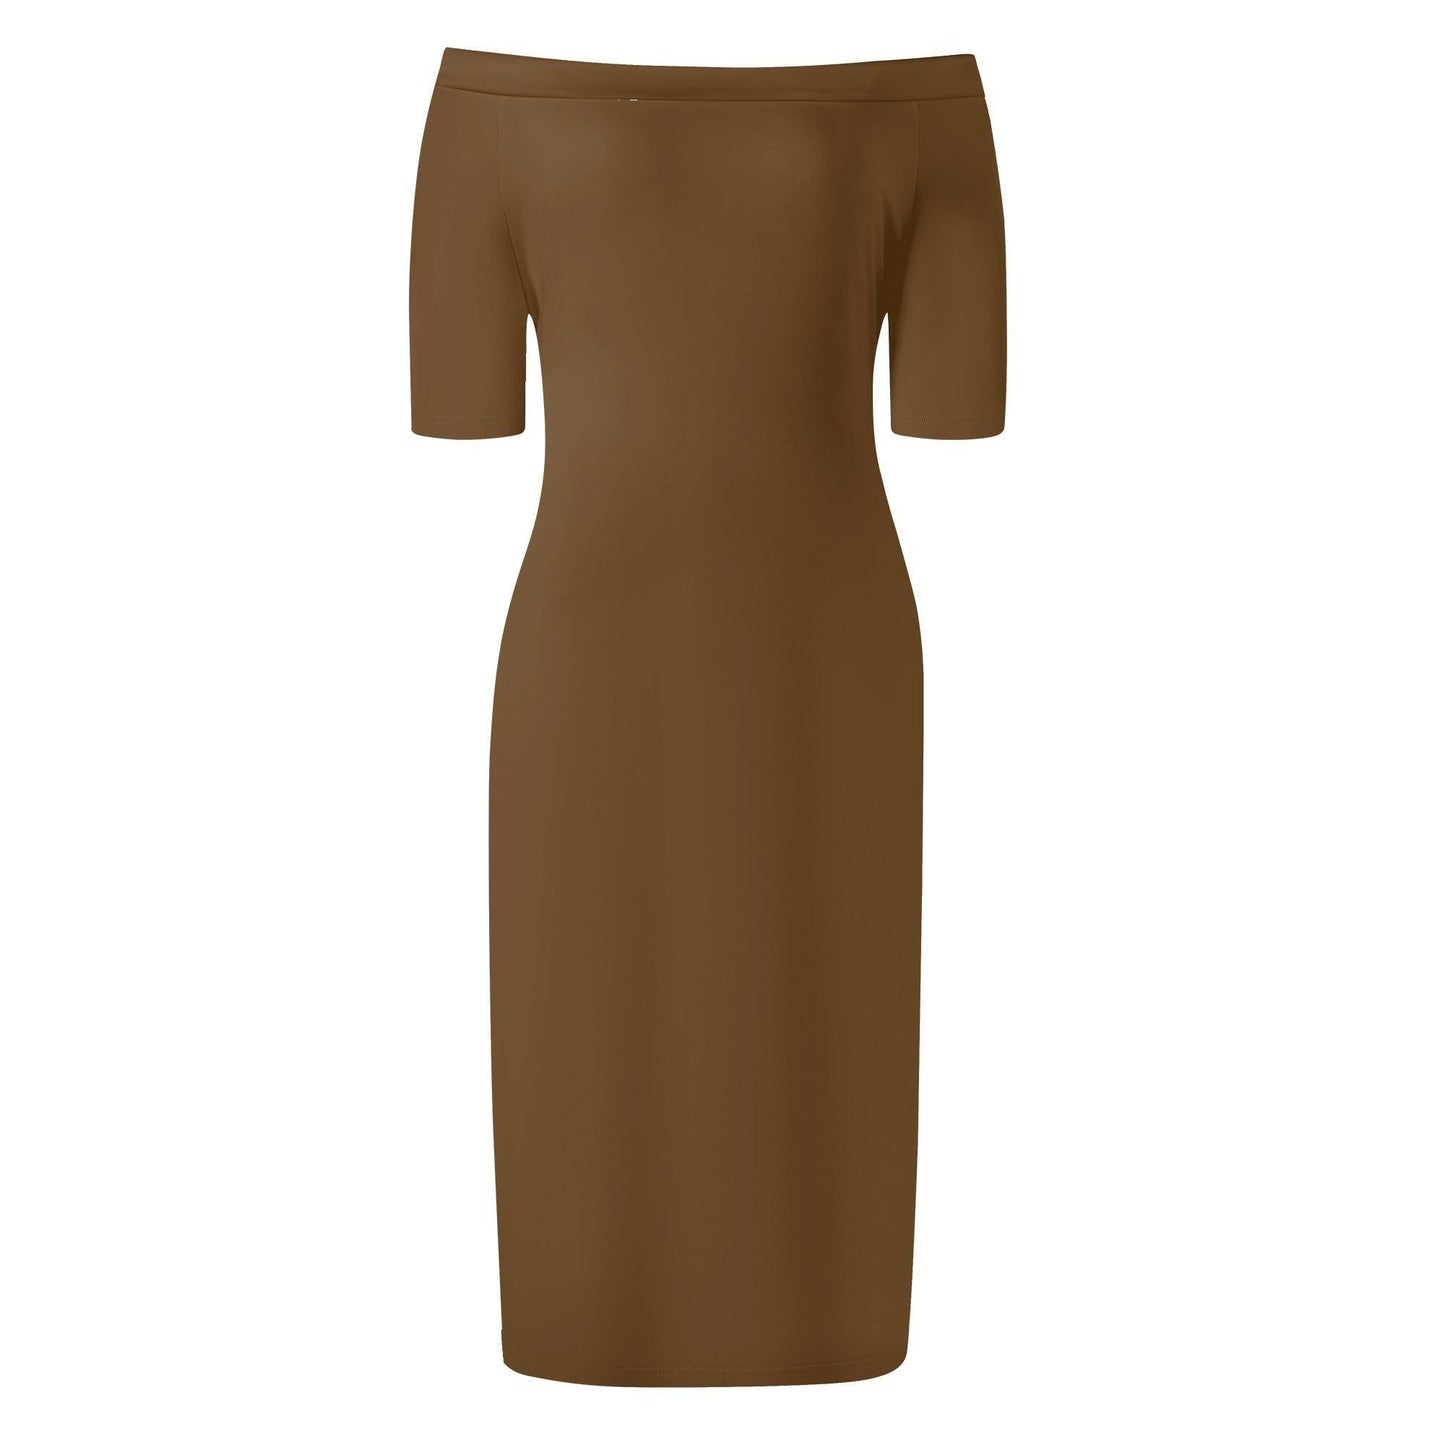 Braunes Off-Shoulder-Kleid -- Braunes Off-Shoulder-Kleid - undefined Off-Shoulder-Kleid | JLR Design